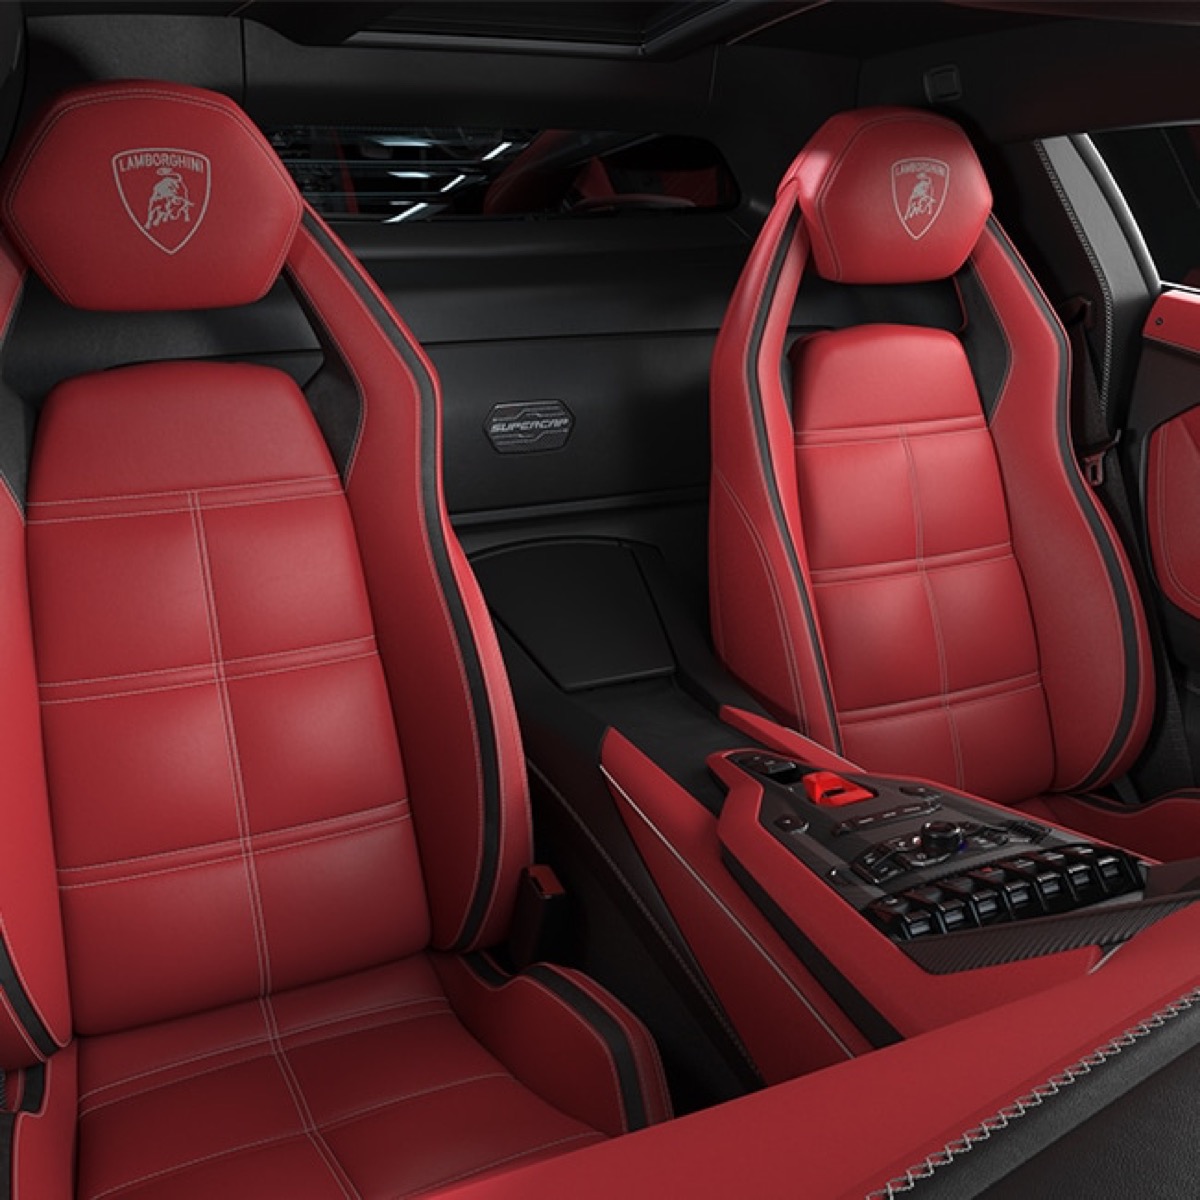 sportautó belső vörös piros bőr ülések